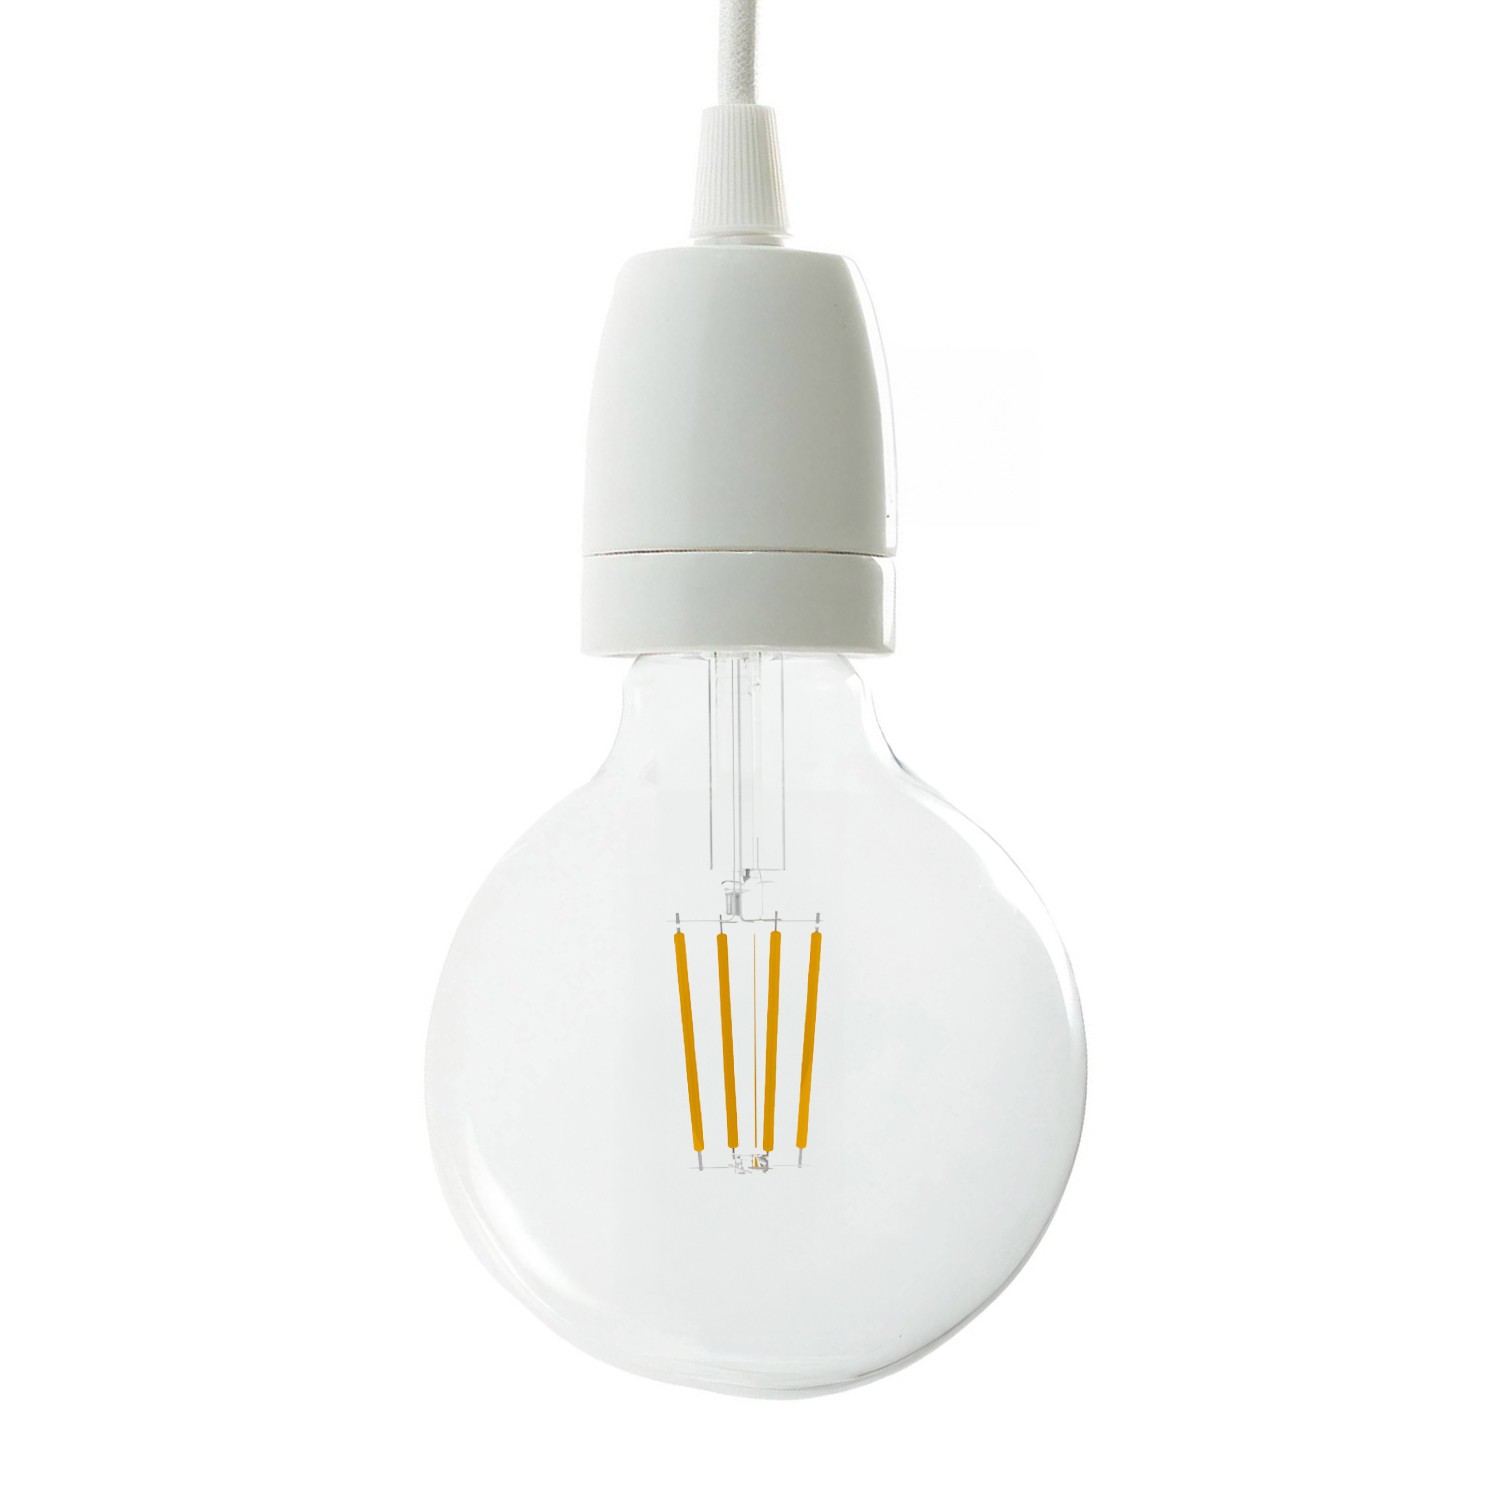 Douille électrique pour Lampe culot E27